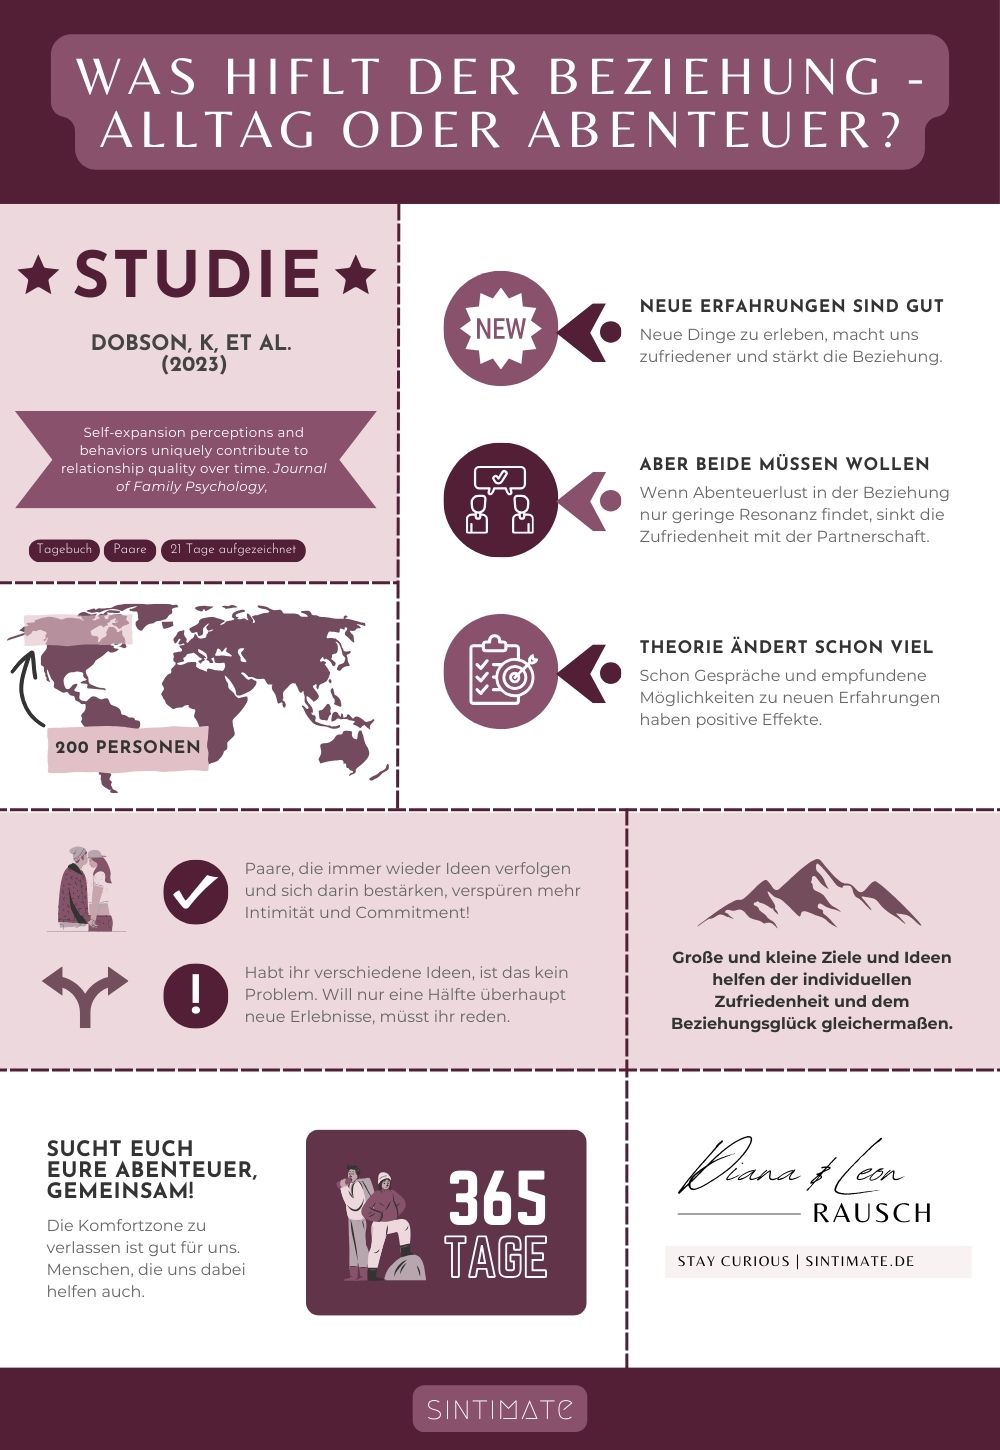 Eine Infografik-Seite mit verschiedenen Grafiken und Schaubildern, die die Ergebnisse der Studie von Dobson und Kollegen auf unterhaltsame Art zusammenfasst.